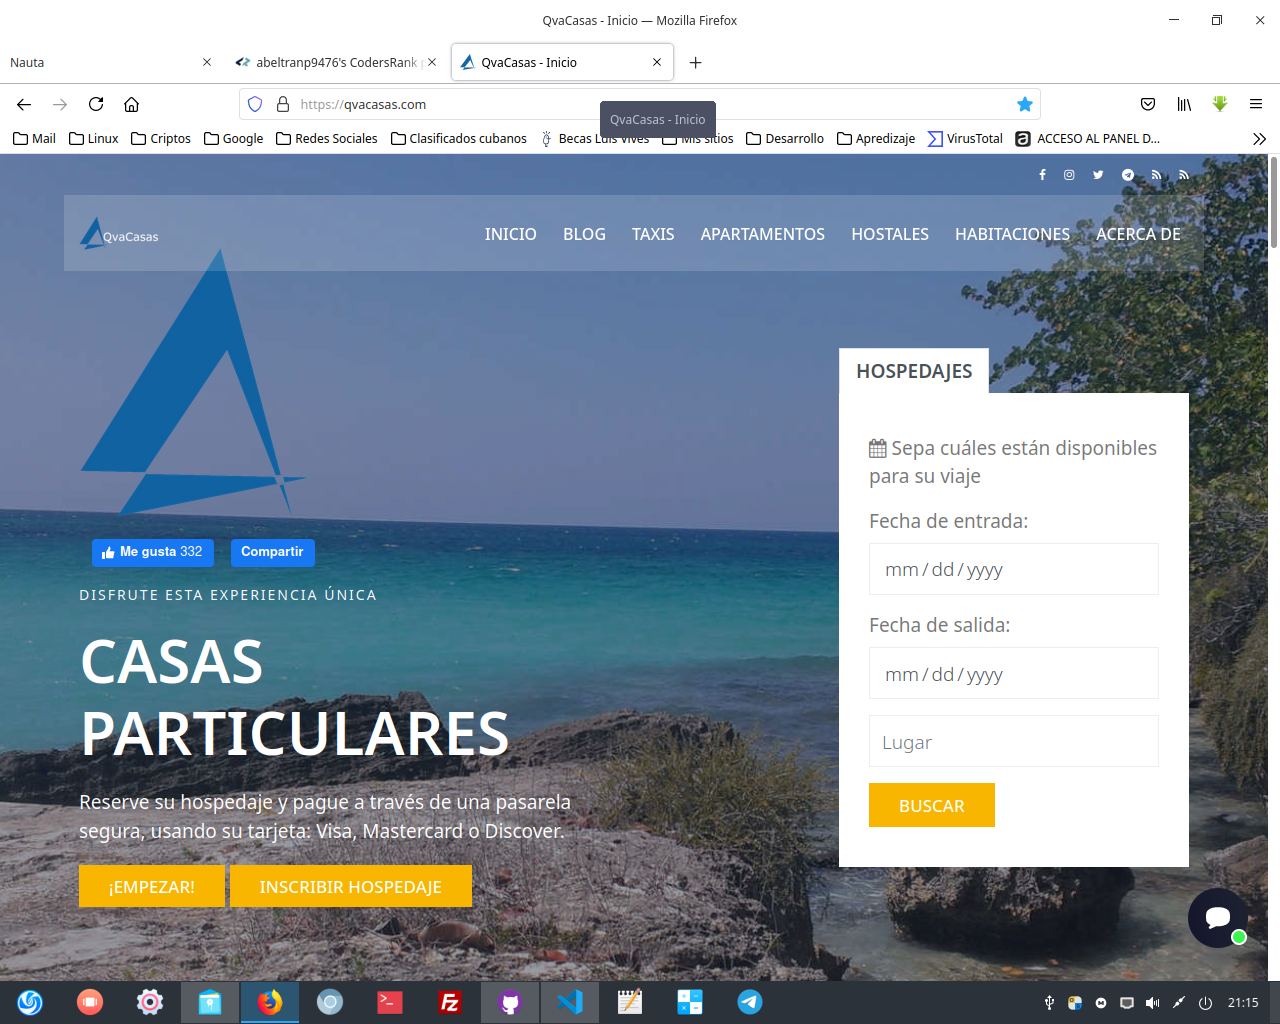 QvaCasas website